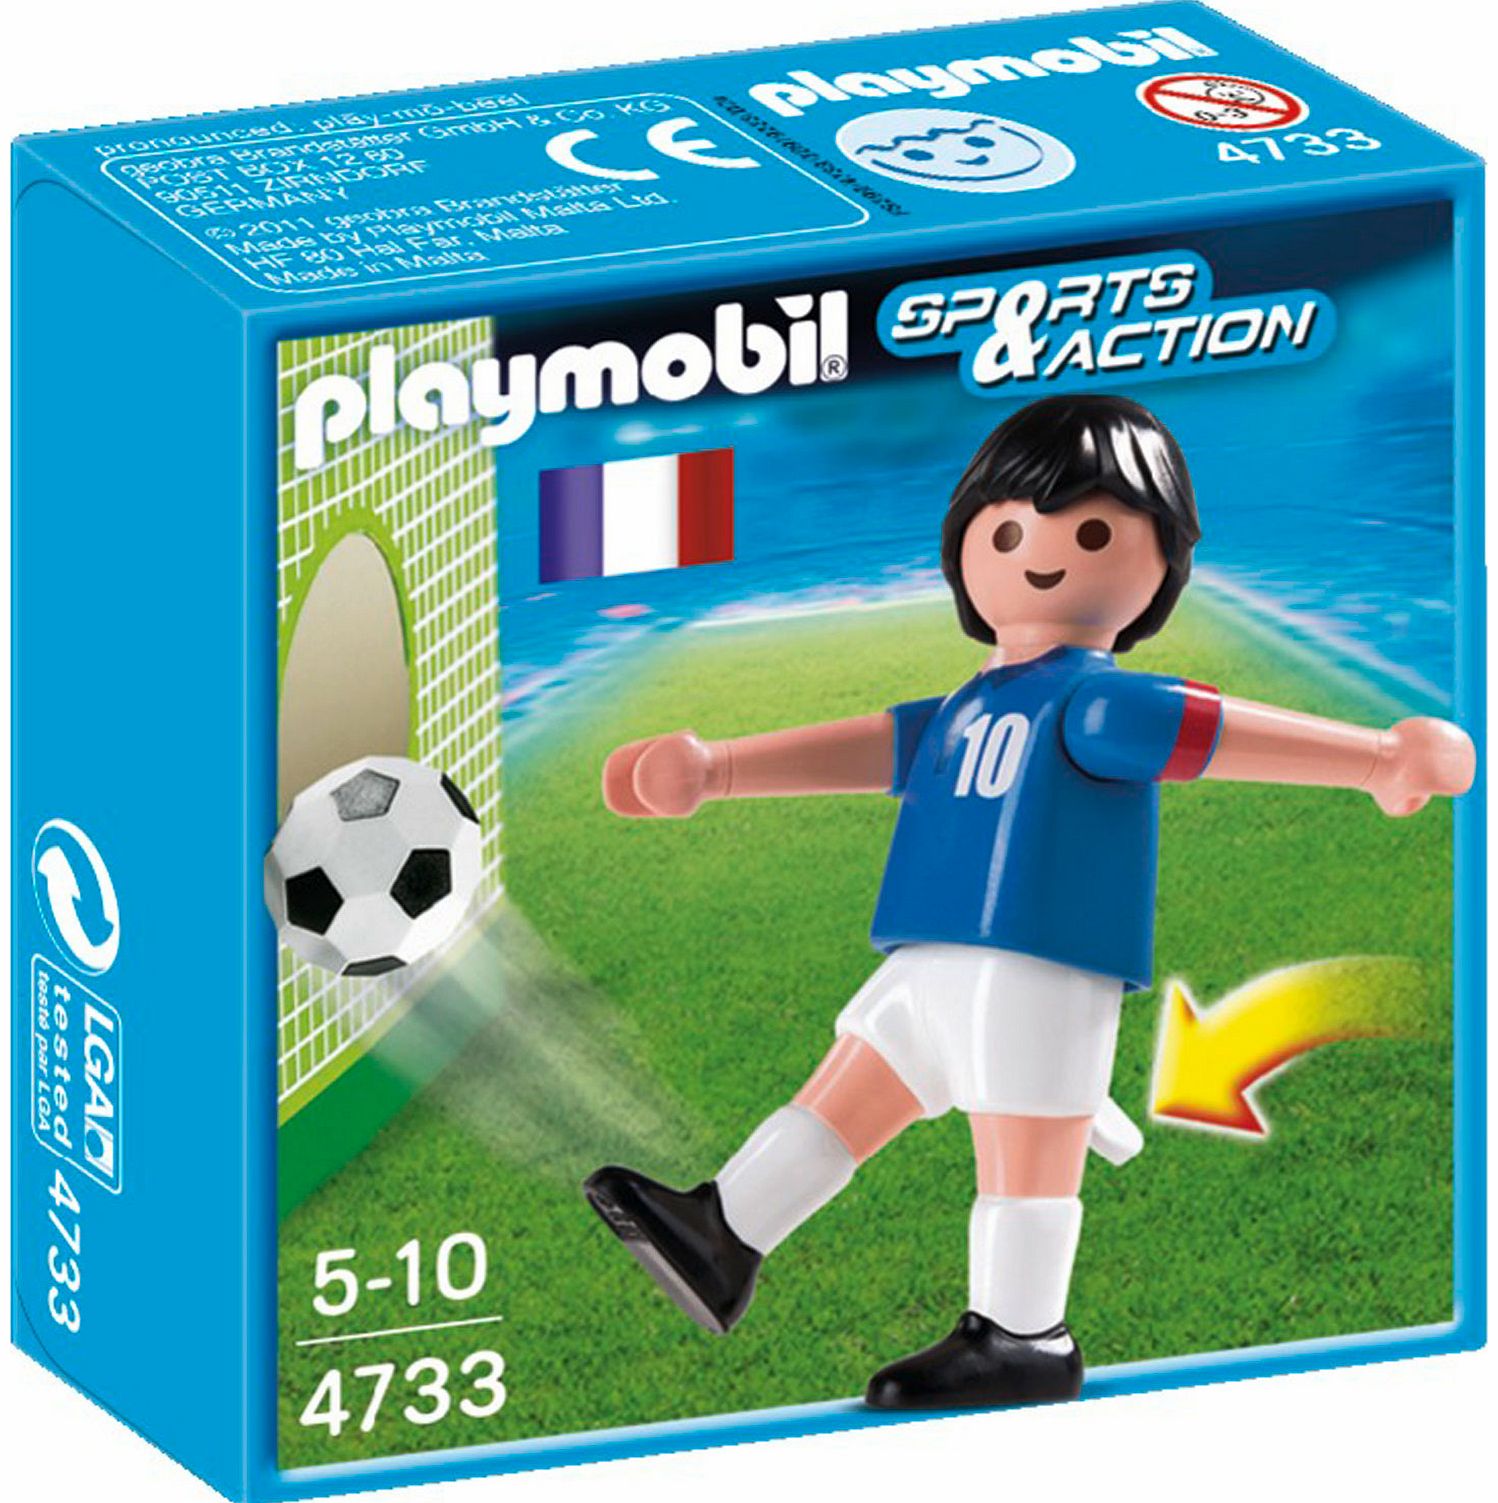 Soccer Player - France 4733